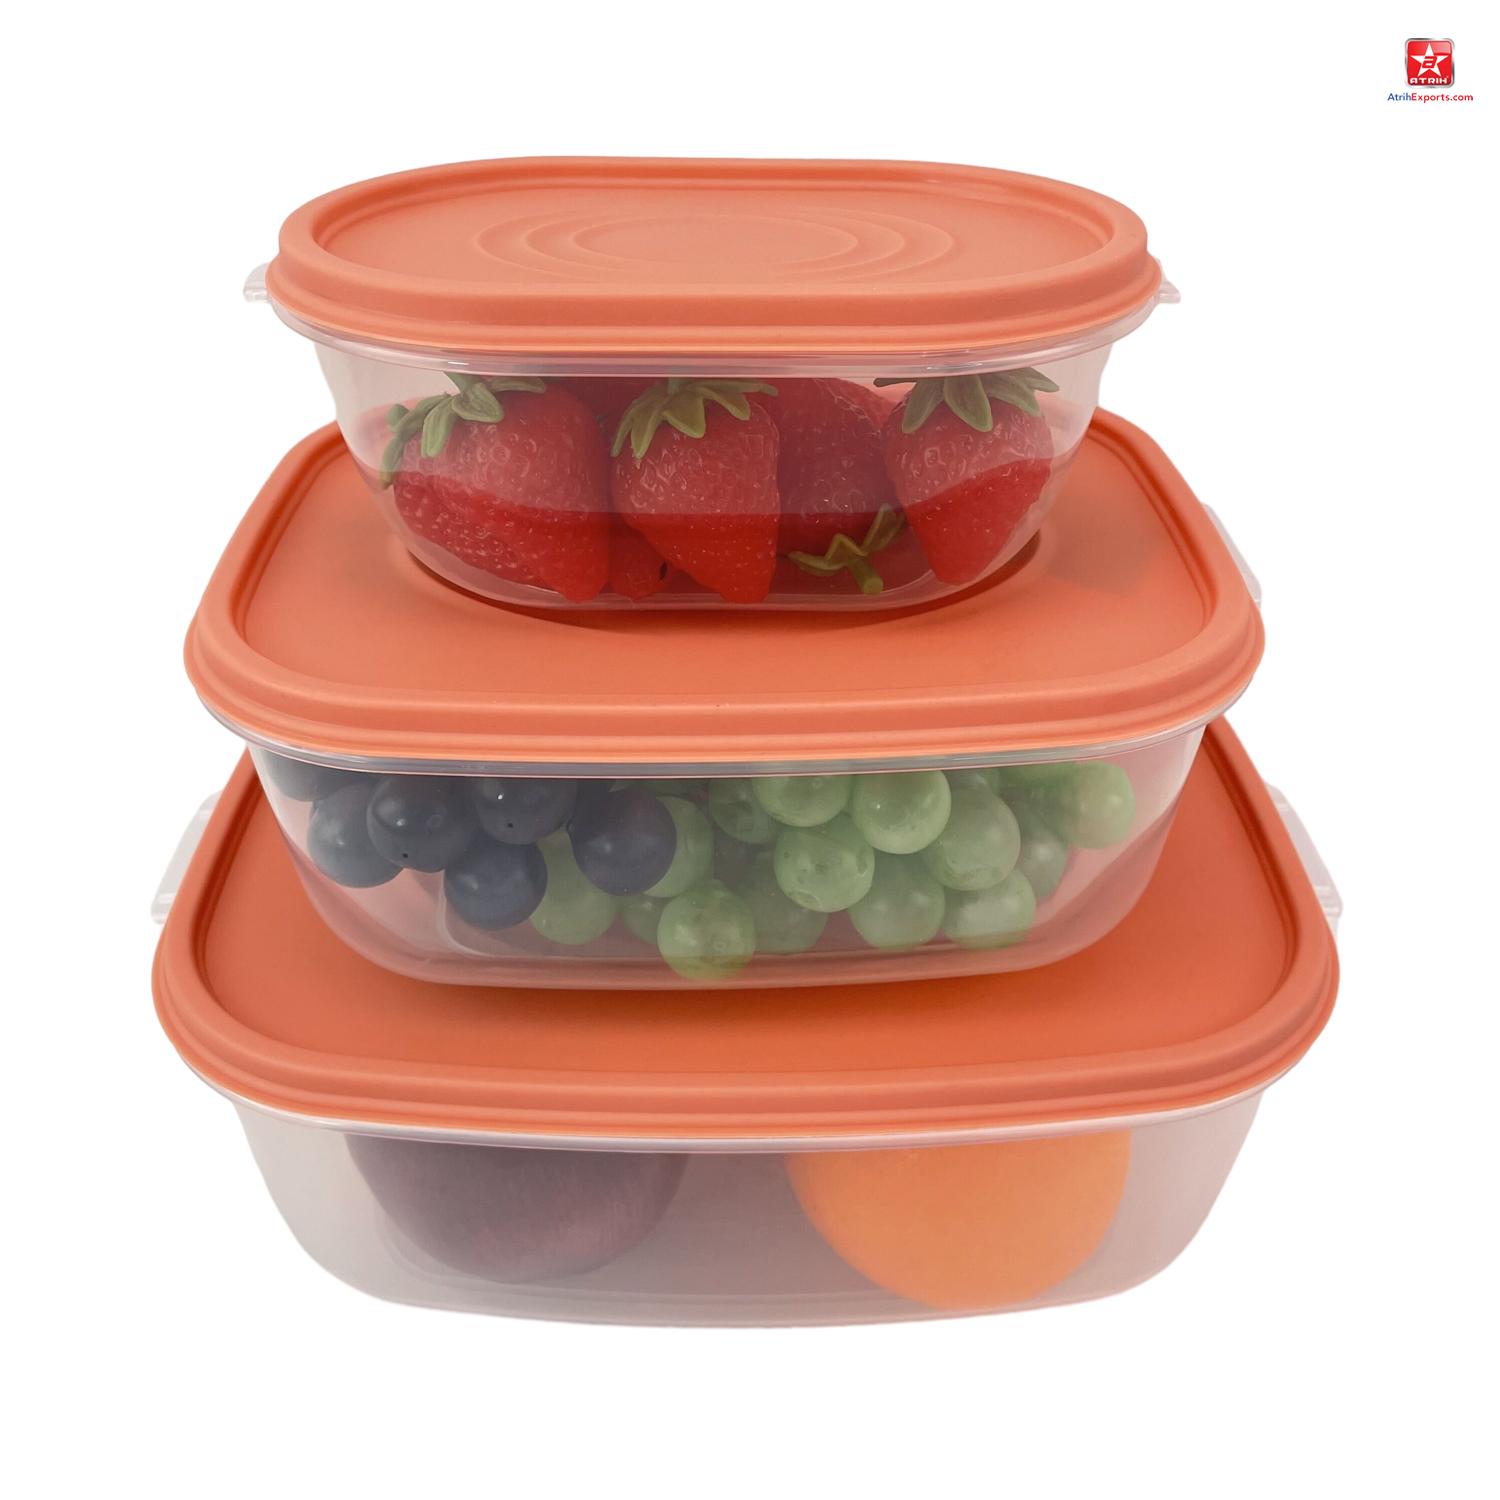 3 unids/set caja de almacenamiento de mantenimiento fresco contenedor de alimentos de plástico refrigerador contenedor de almacenamiento de frutas y verduras